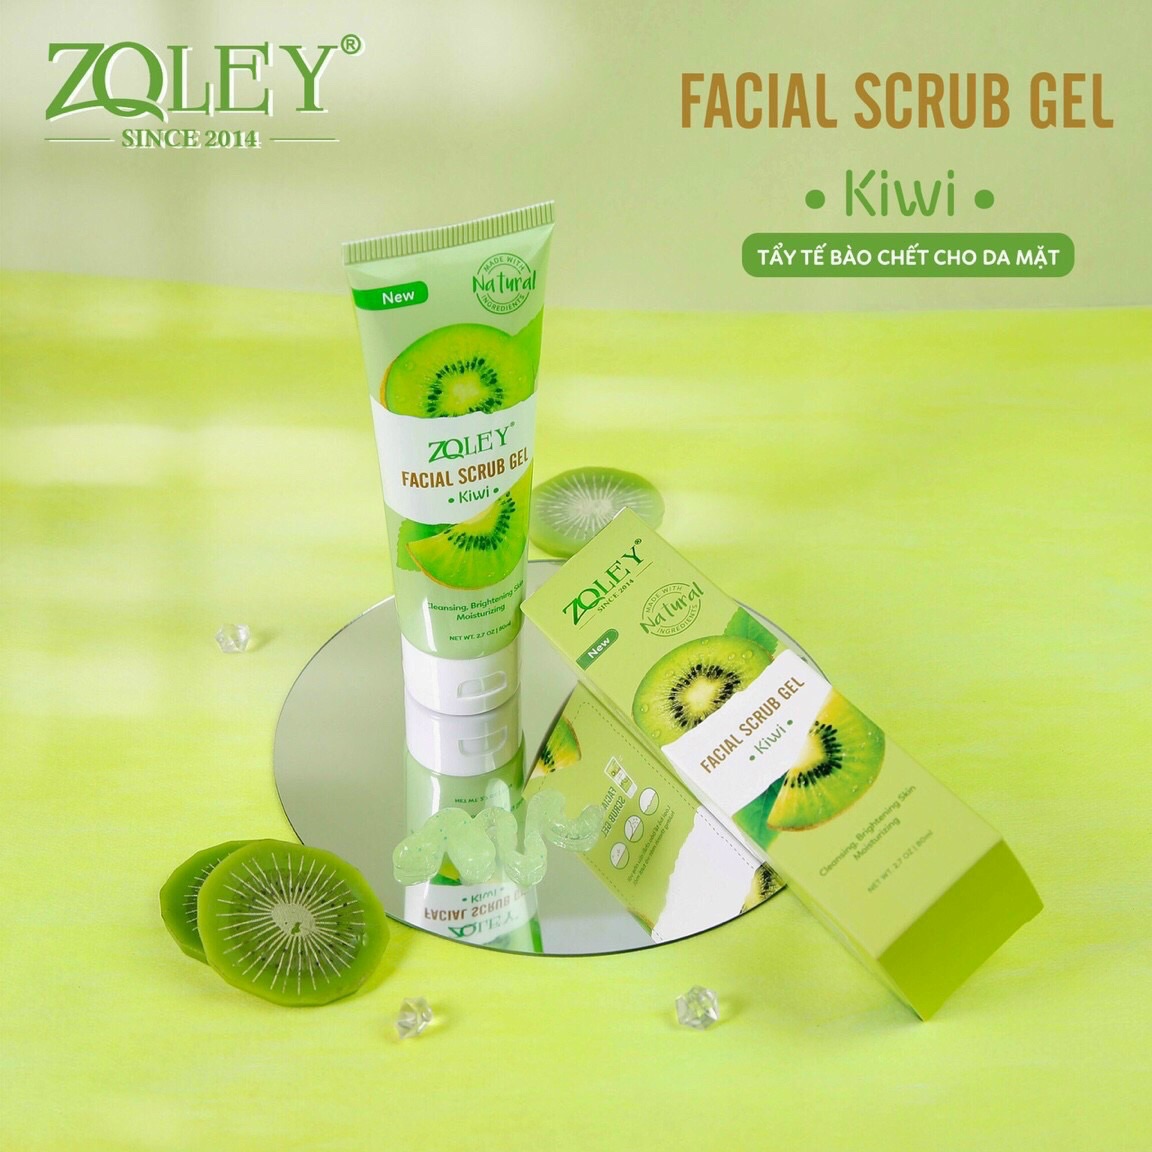 Tẩy tế bào chết kiwi Facial Scrub Gel Zoley chính hãng - 8936095371607